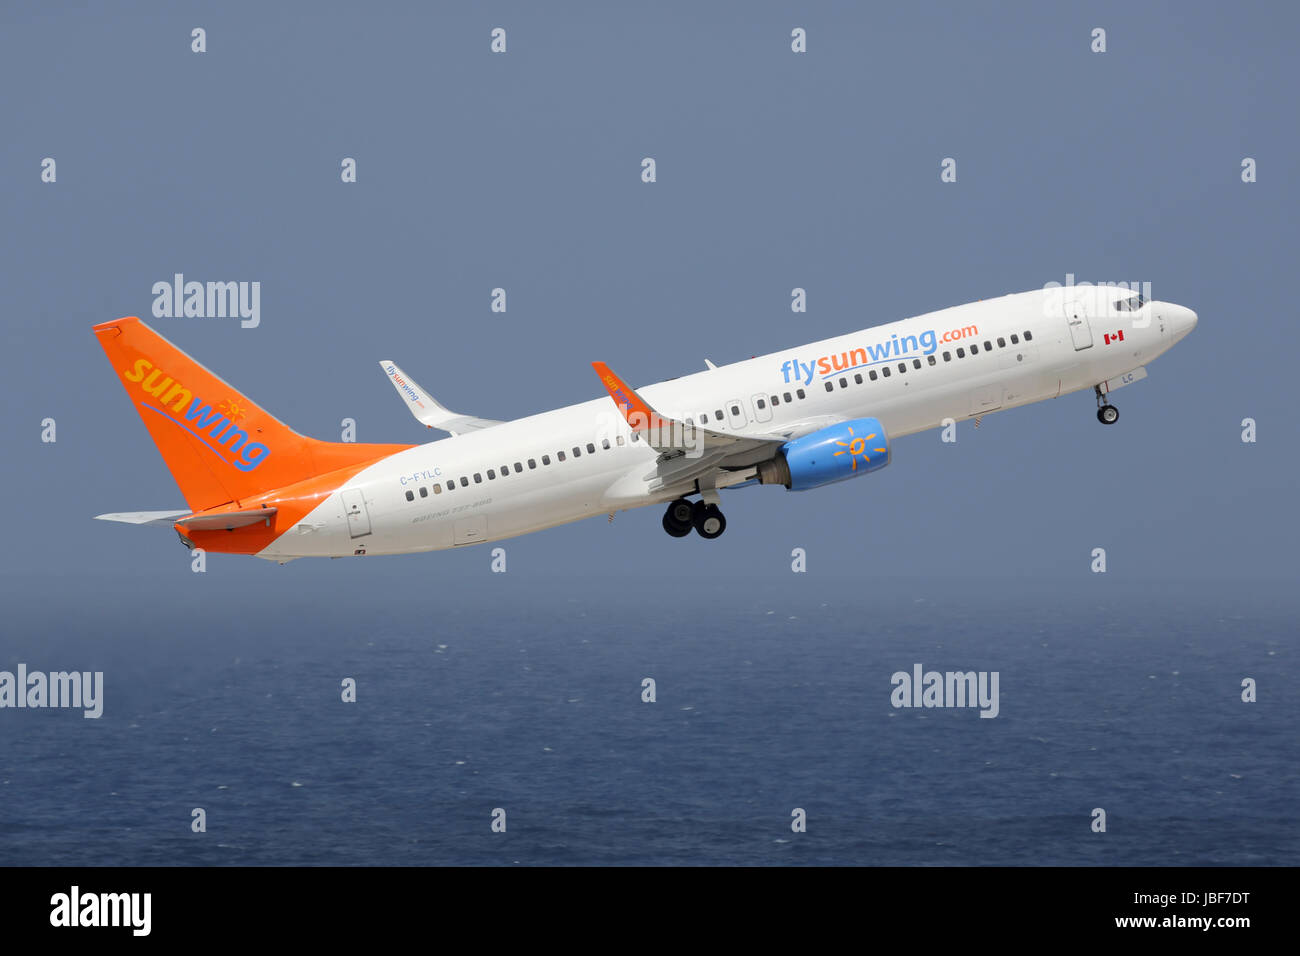 Curacao - 16. Februar 2014: Eine Boeing 737-800 der Sunwing Mit der Kennung C-FYLC startete Vom Flughafen von Curacao (CUR). Sunwing ist Eine Kanadische Fluggesellschaft Mit Sitz in Toronto. Sie Betreibt 33 Flugzeuge. Stockfoto